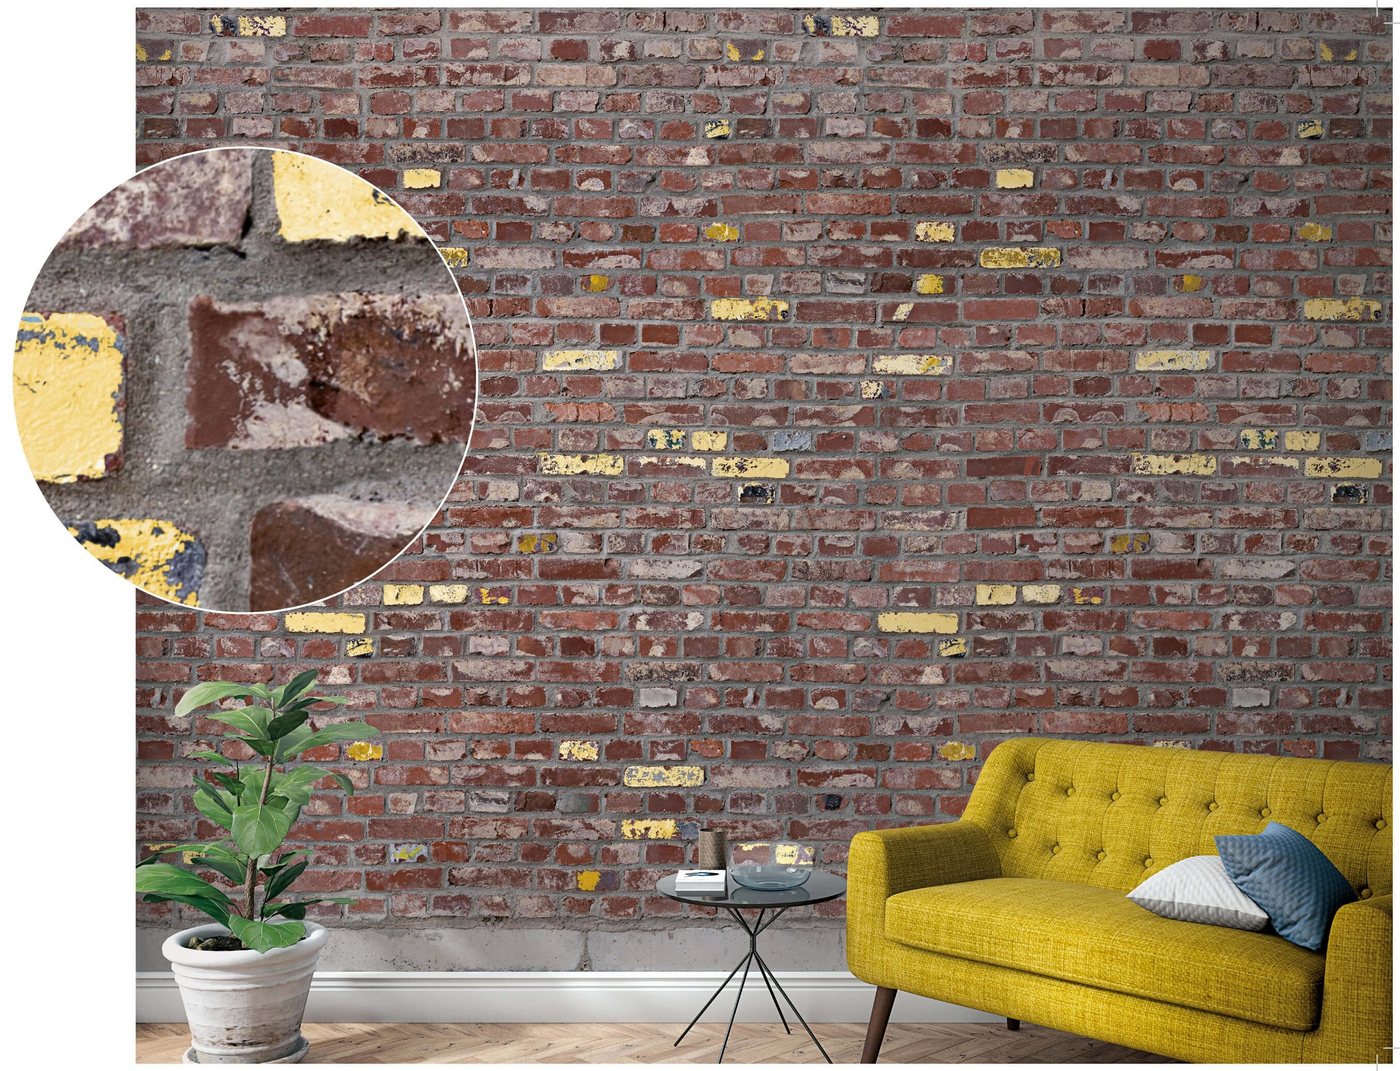 Newroom Vliestapete, [ 2,7 x 1,59m ] großzügiges Motiv - kein wiederkehrendes Muster - nahtlos große Flächen möglich - Fototapete Wandbild Stein Ziegel Klinker Made in Germany von Newroom